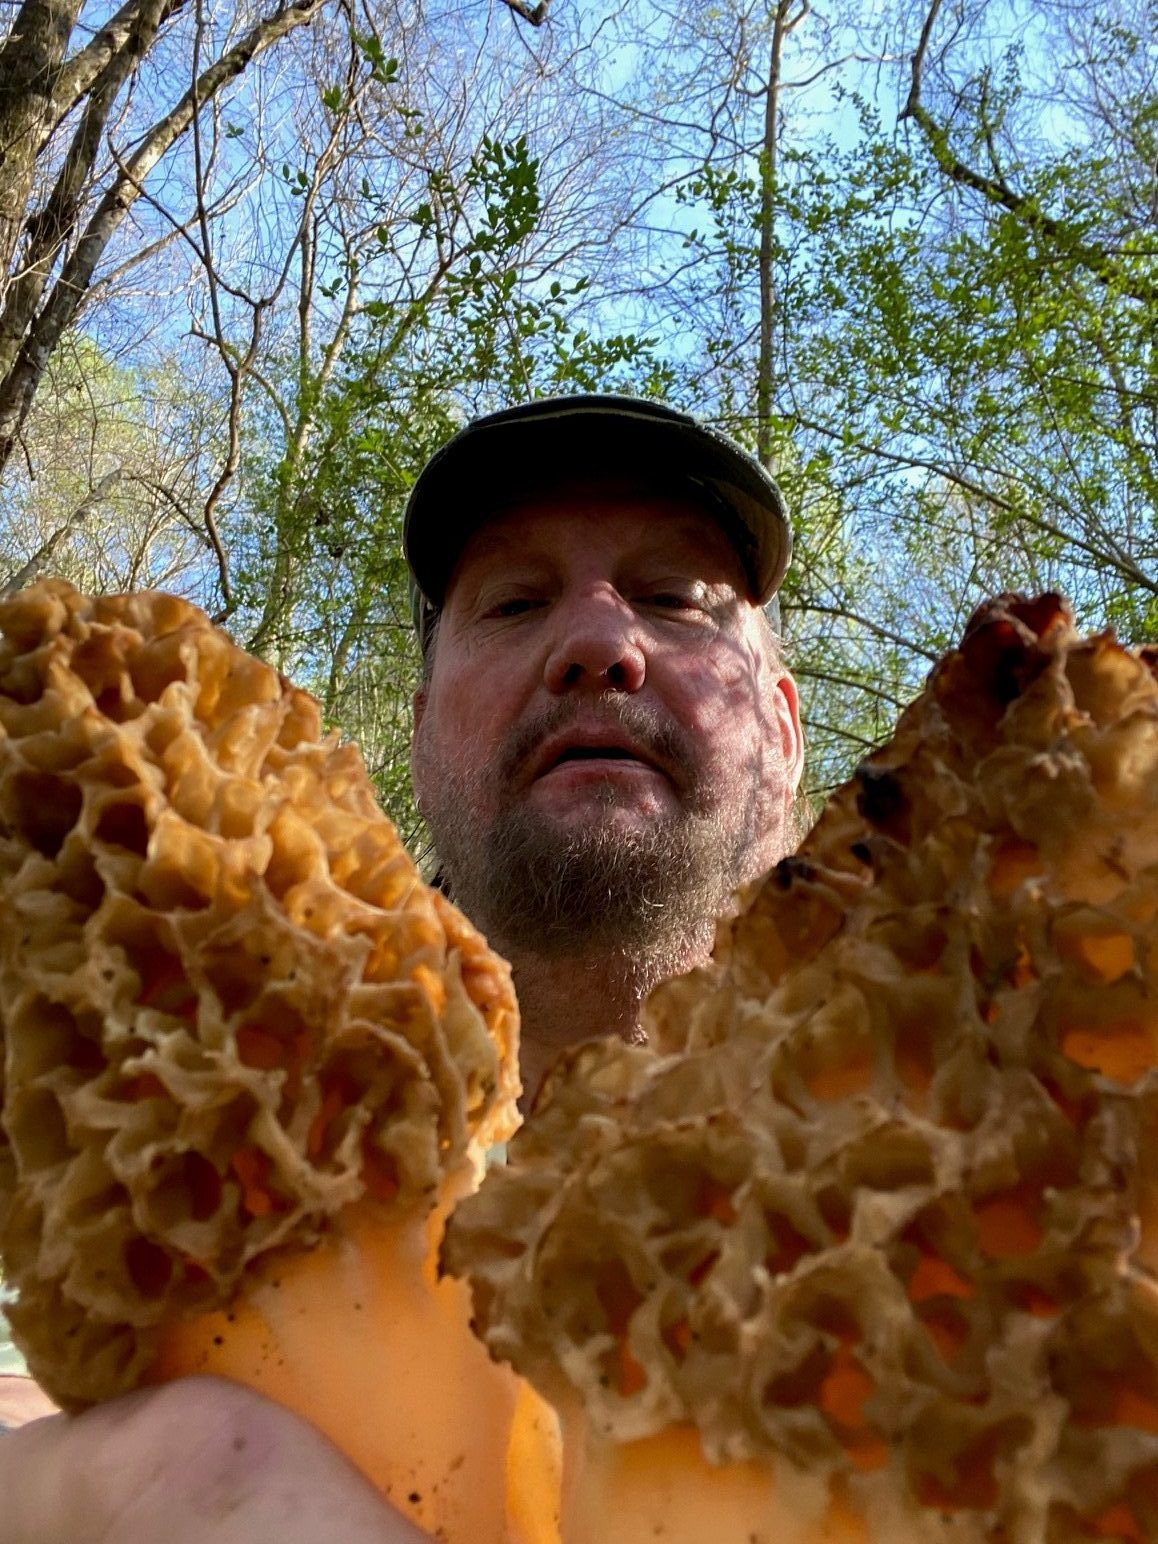 Morel Mushrooms Season Michigan
 Chris discusses the 2020 morel mushroom season The